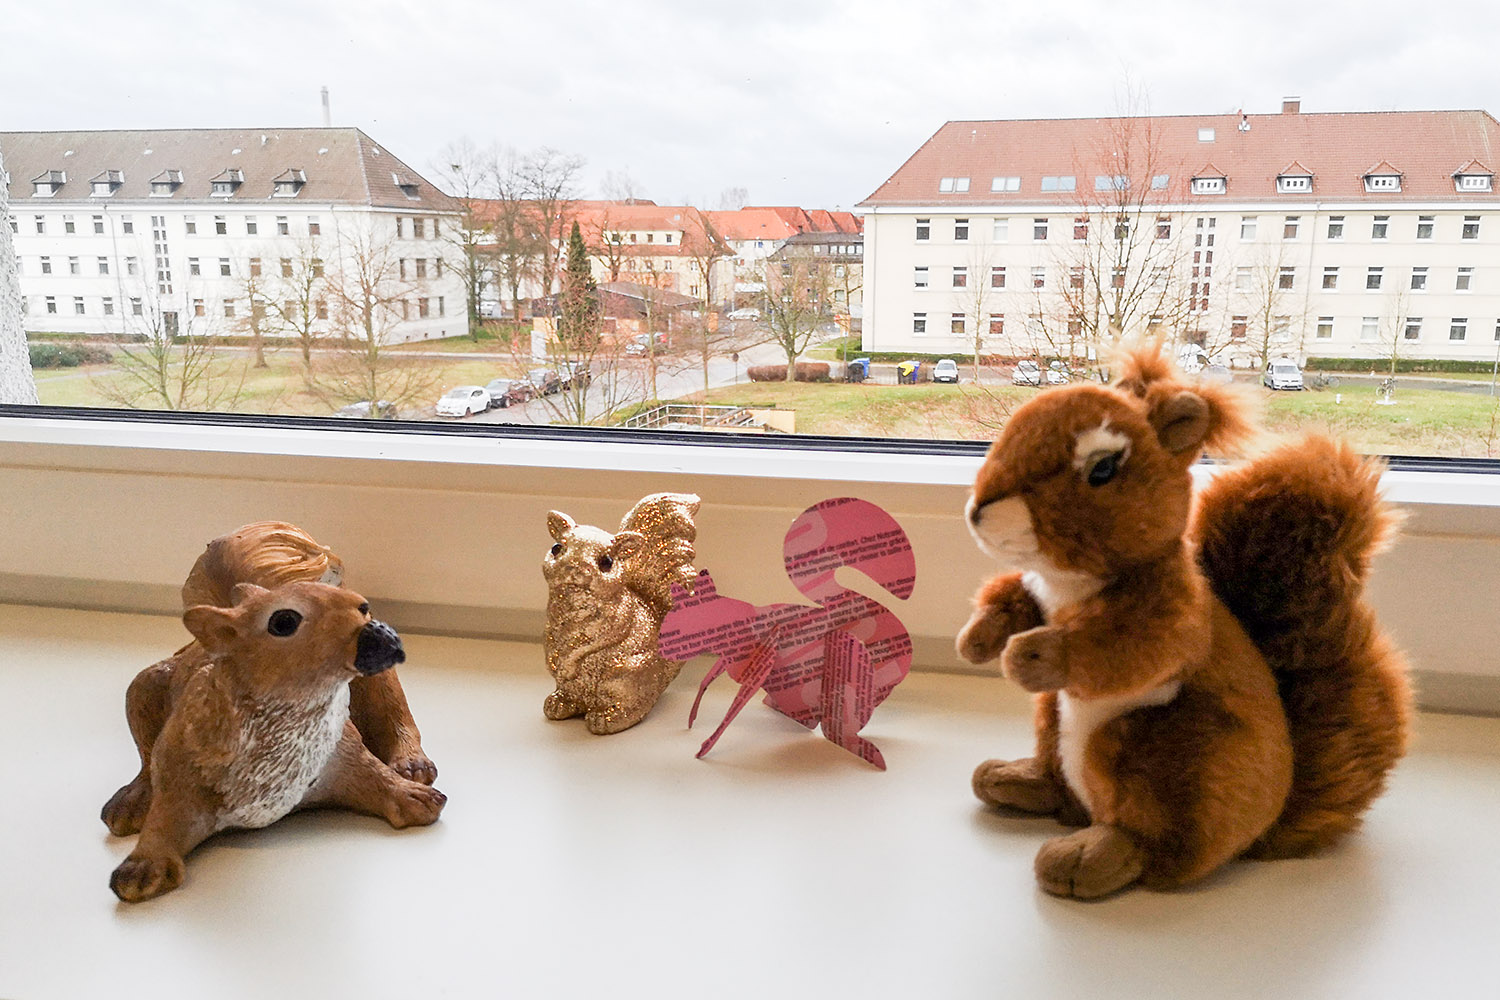 "Ich werde immer glücklich, wenn ich Eichhörnchen beobachte", sagt Glücksforscher Tobias Rahm. Diese Exemplare auf der Fensterbank in seinem Büro, hat er von Besuchern seiner Vorträge geschenkt bekommen. Bildnachweis: Tobias Rahm/TU Braunschweig